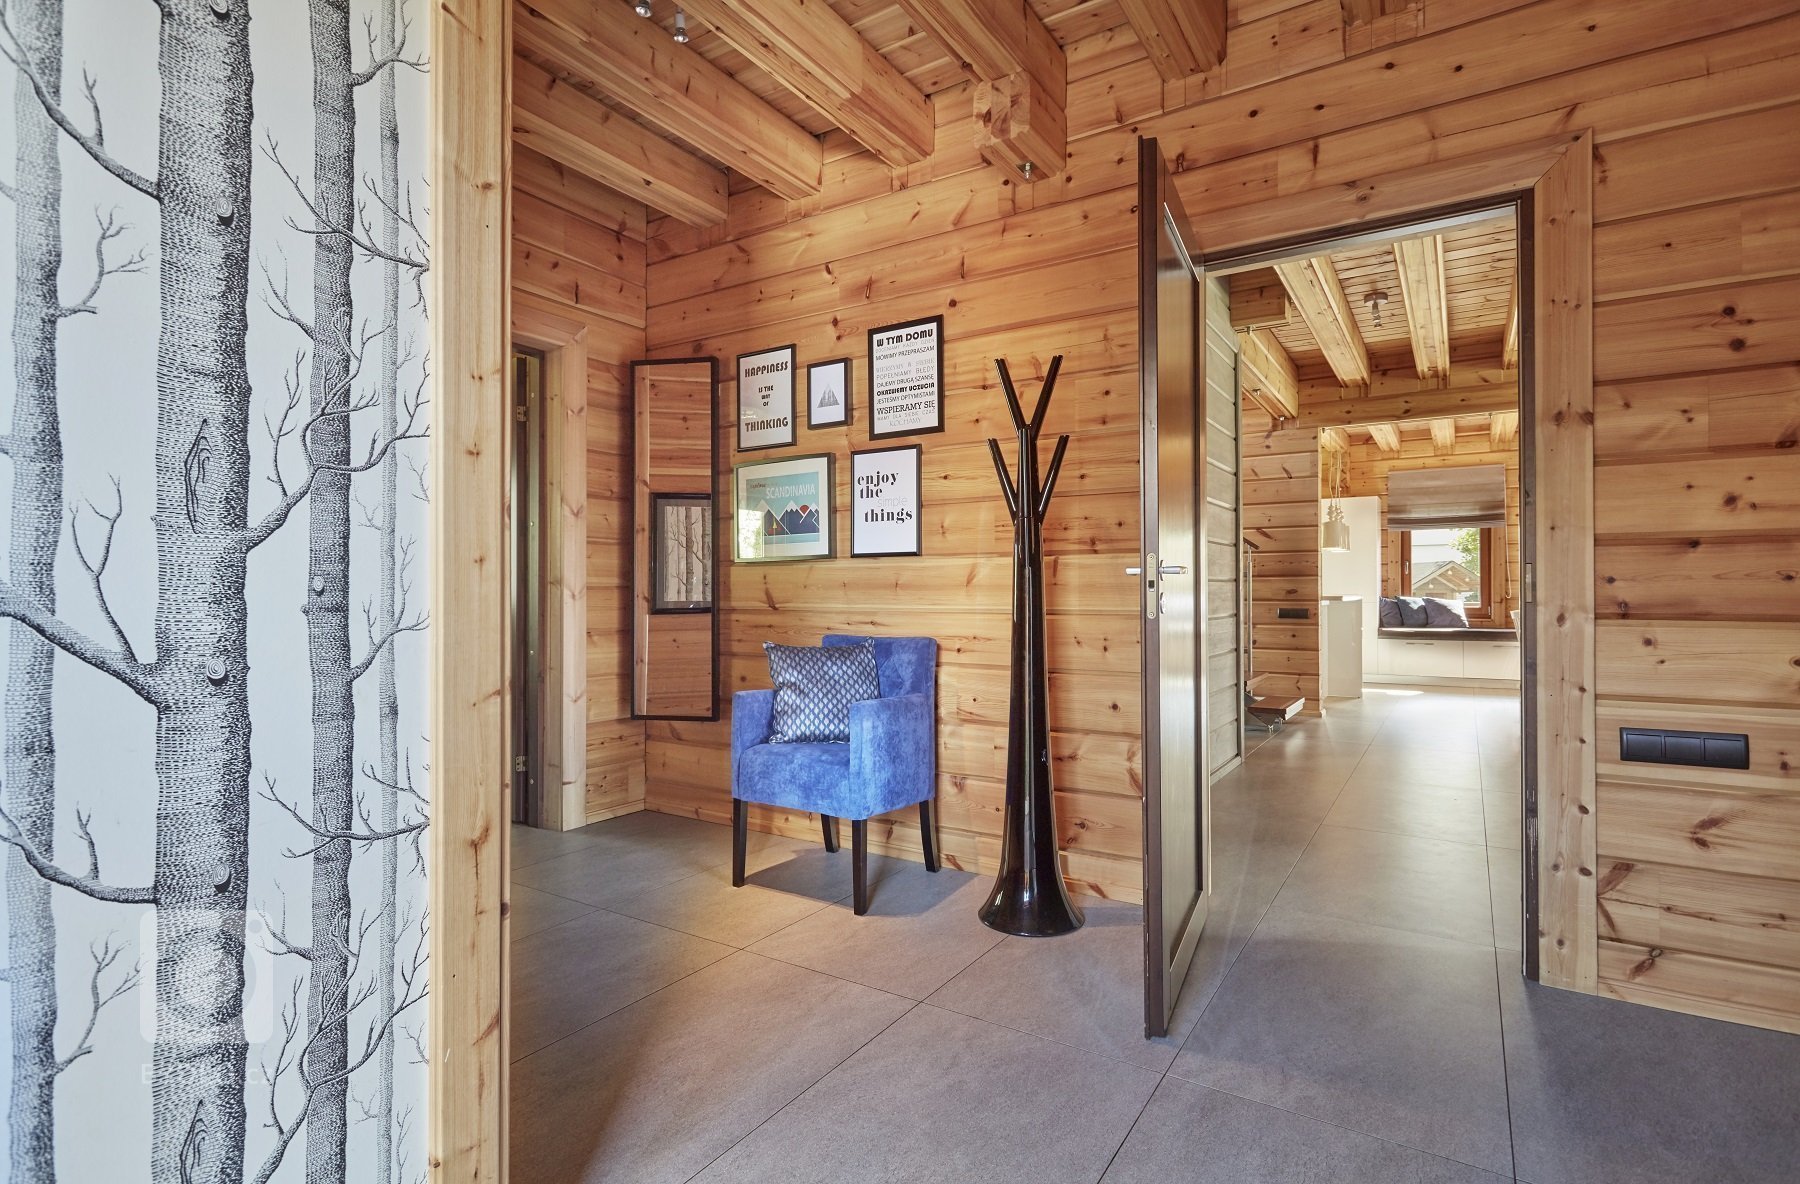 Pohádkový finský srubový dům KONTIO River House 2 se pyšní&nbsp;moderním interiérem, který klade důraz zejména na přírodní tóny&nbsp;a citlivě mísí několik…